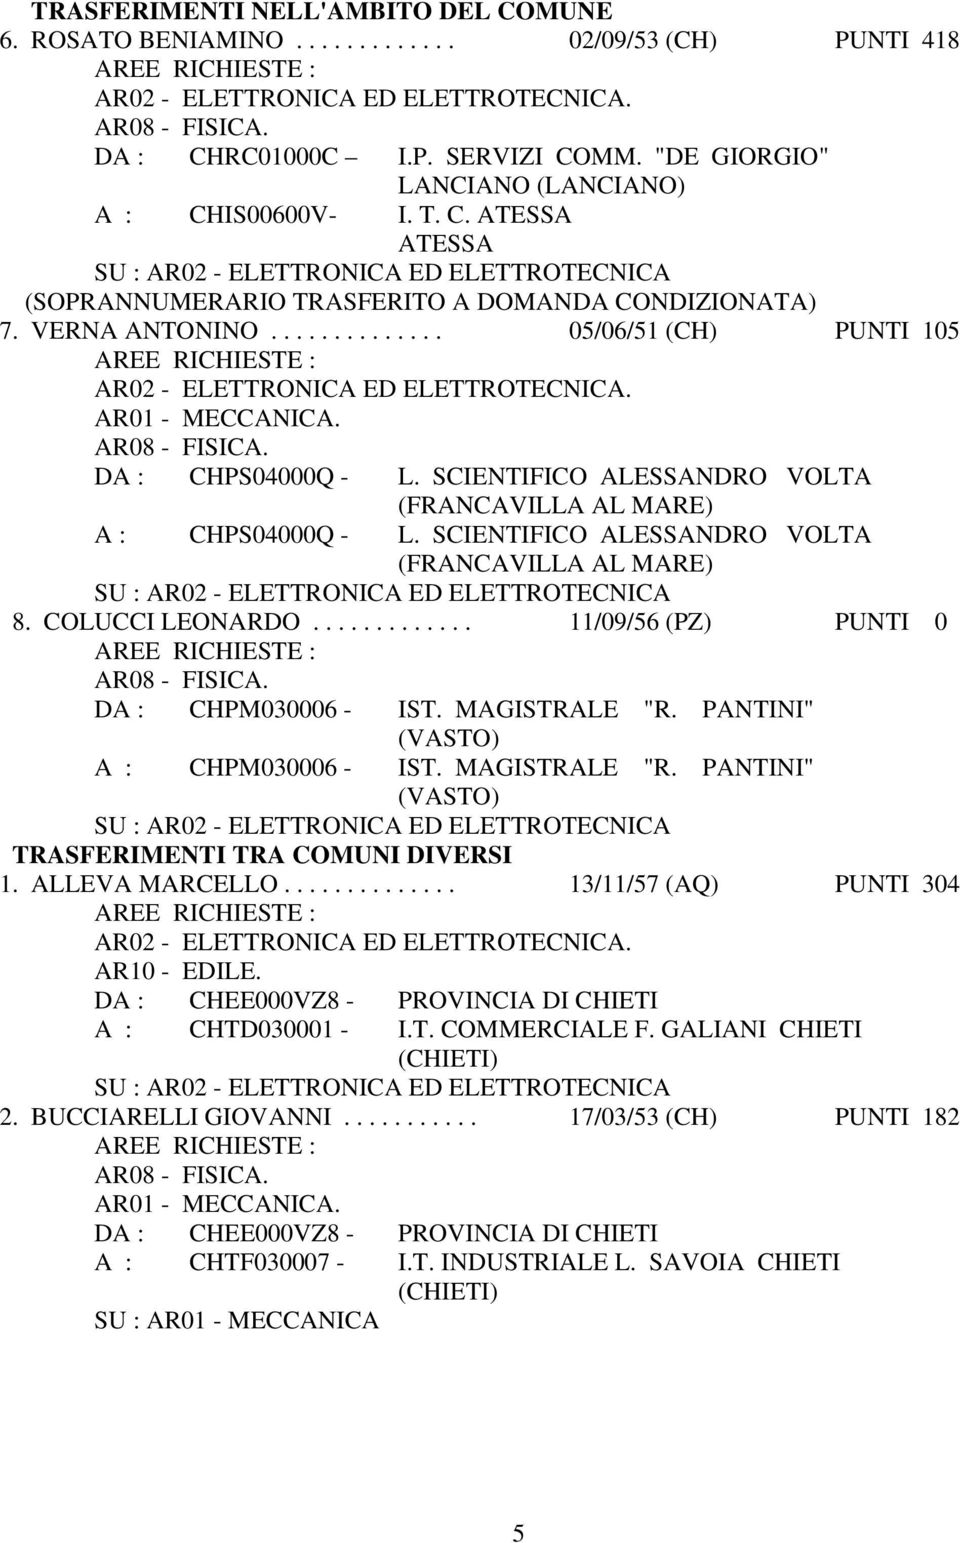 SCIENTIFICO ALESSANDRO VOLTA (FRANCAVILLA AL MARE) 8. COLUCCI LEONARDO............. 11/09/56 (PZ) PUNTI 0 DA : CHPM030006 - IST. MAGISTRALE "R. PANTINI" A : CHPM030006 - IST. MAGISTRALE "R. PANTINI" TRASFERIMENTI TRA COMUNI DIVERSI 1.